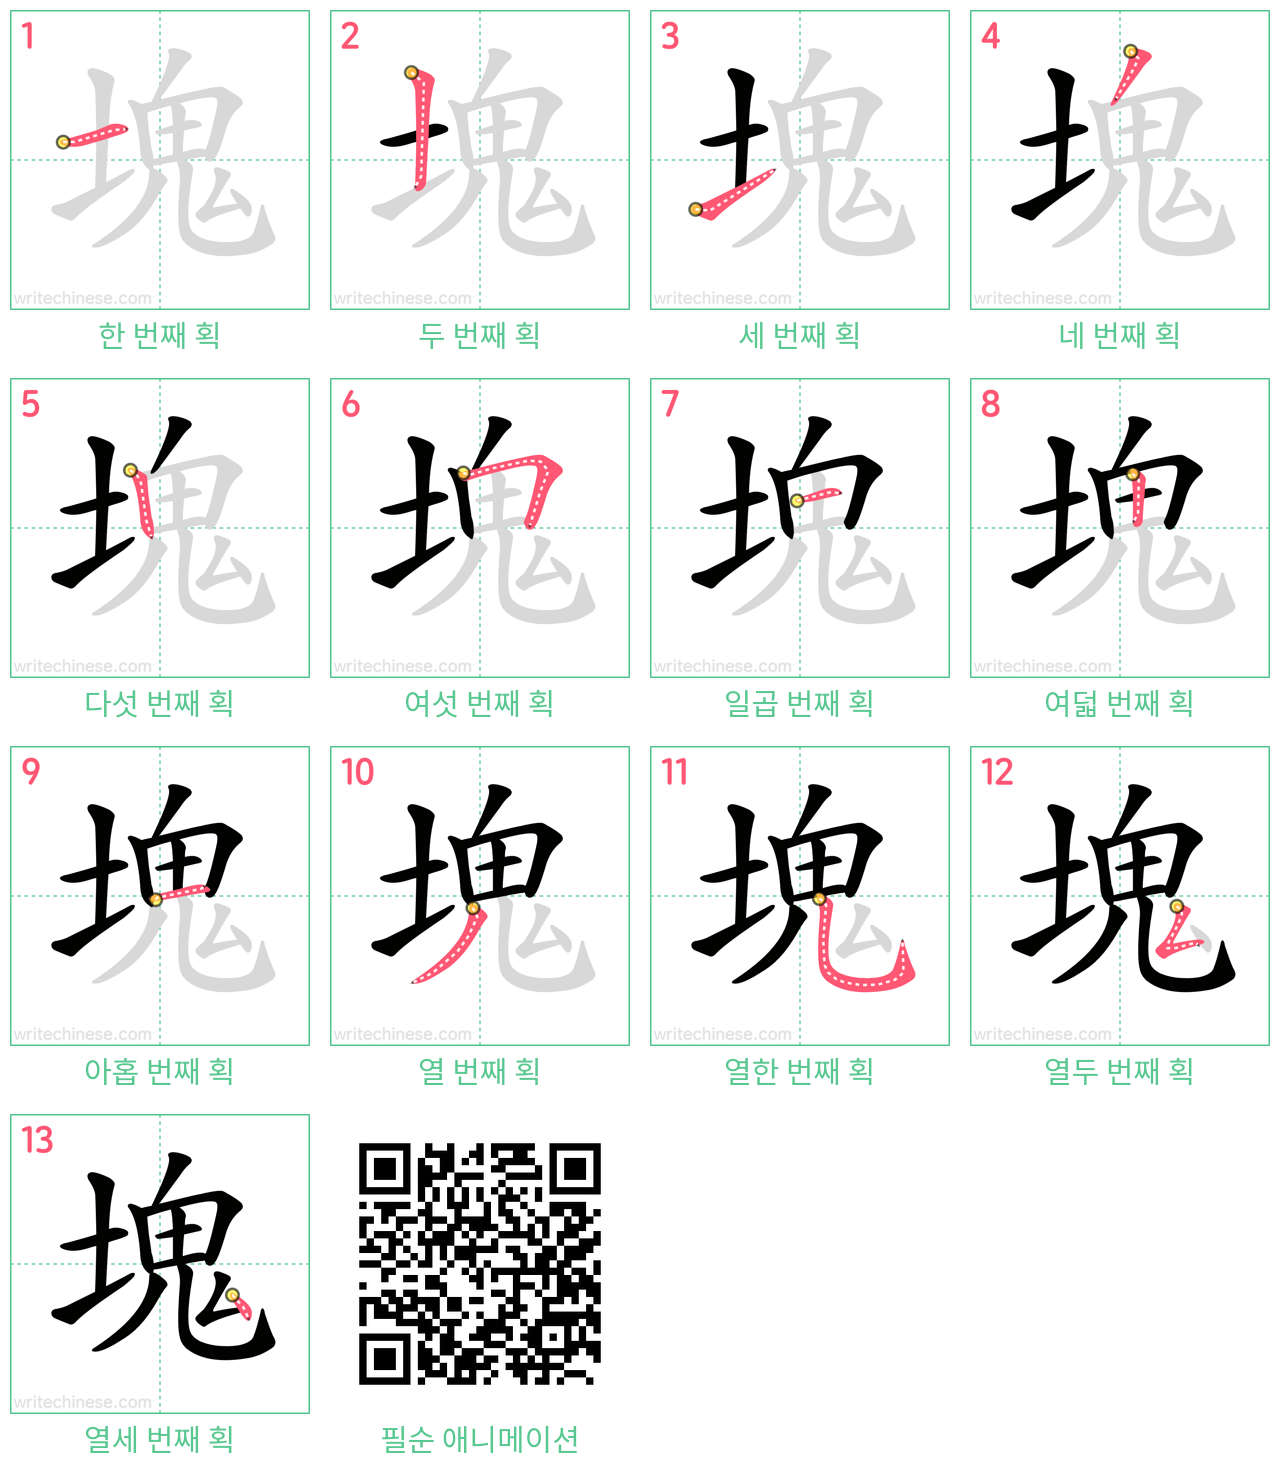 塊 step-by-step stroke order diagrams